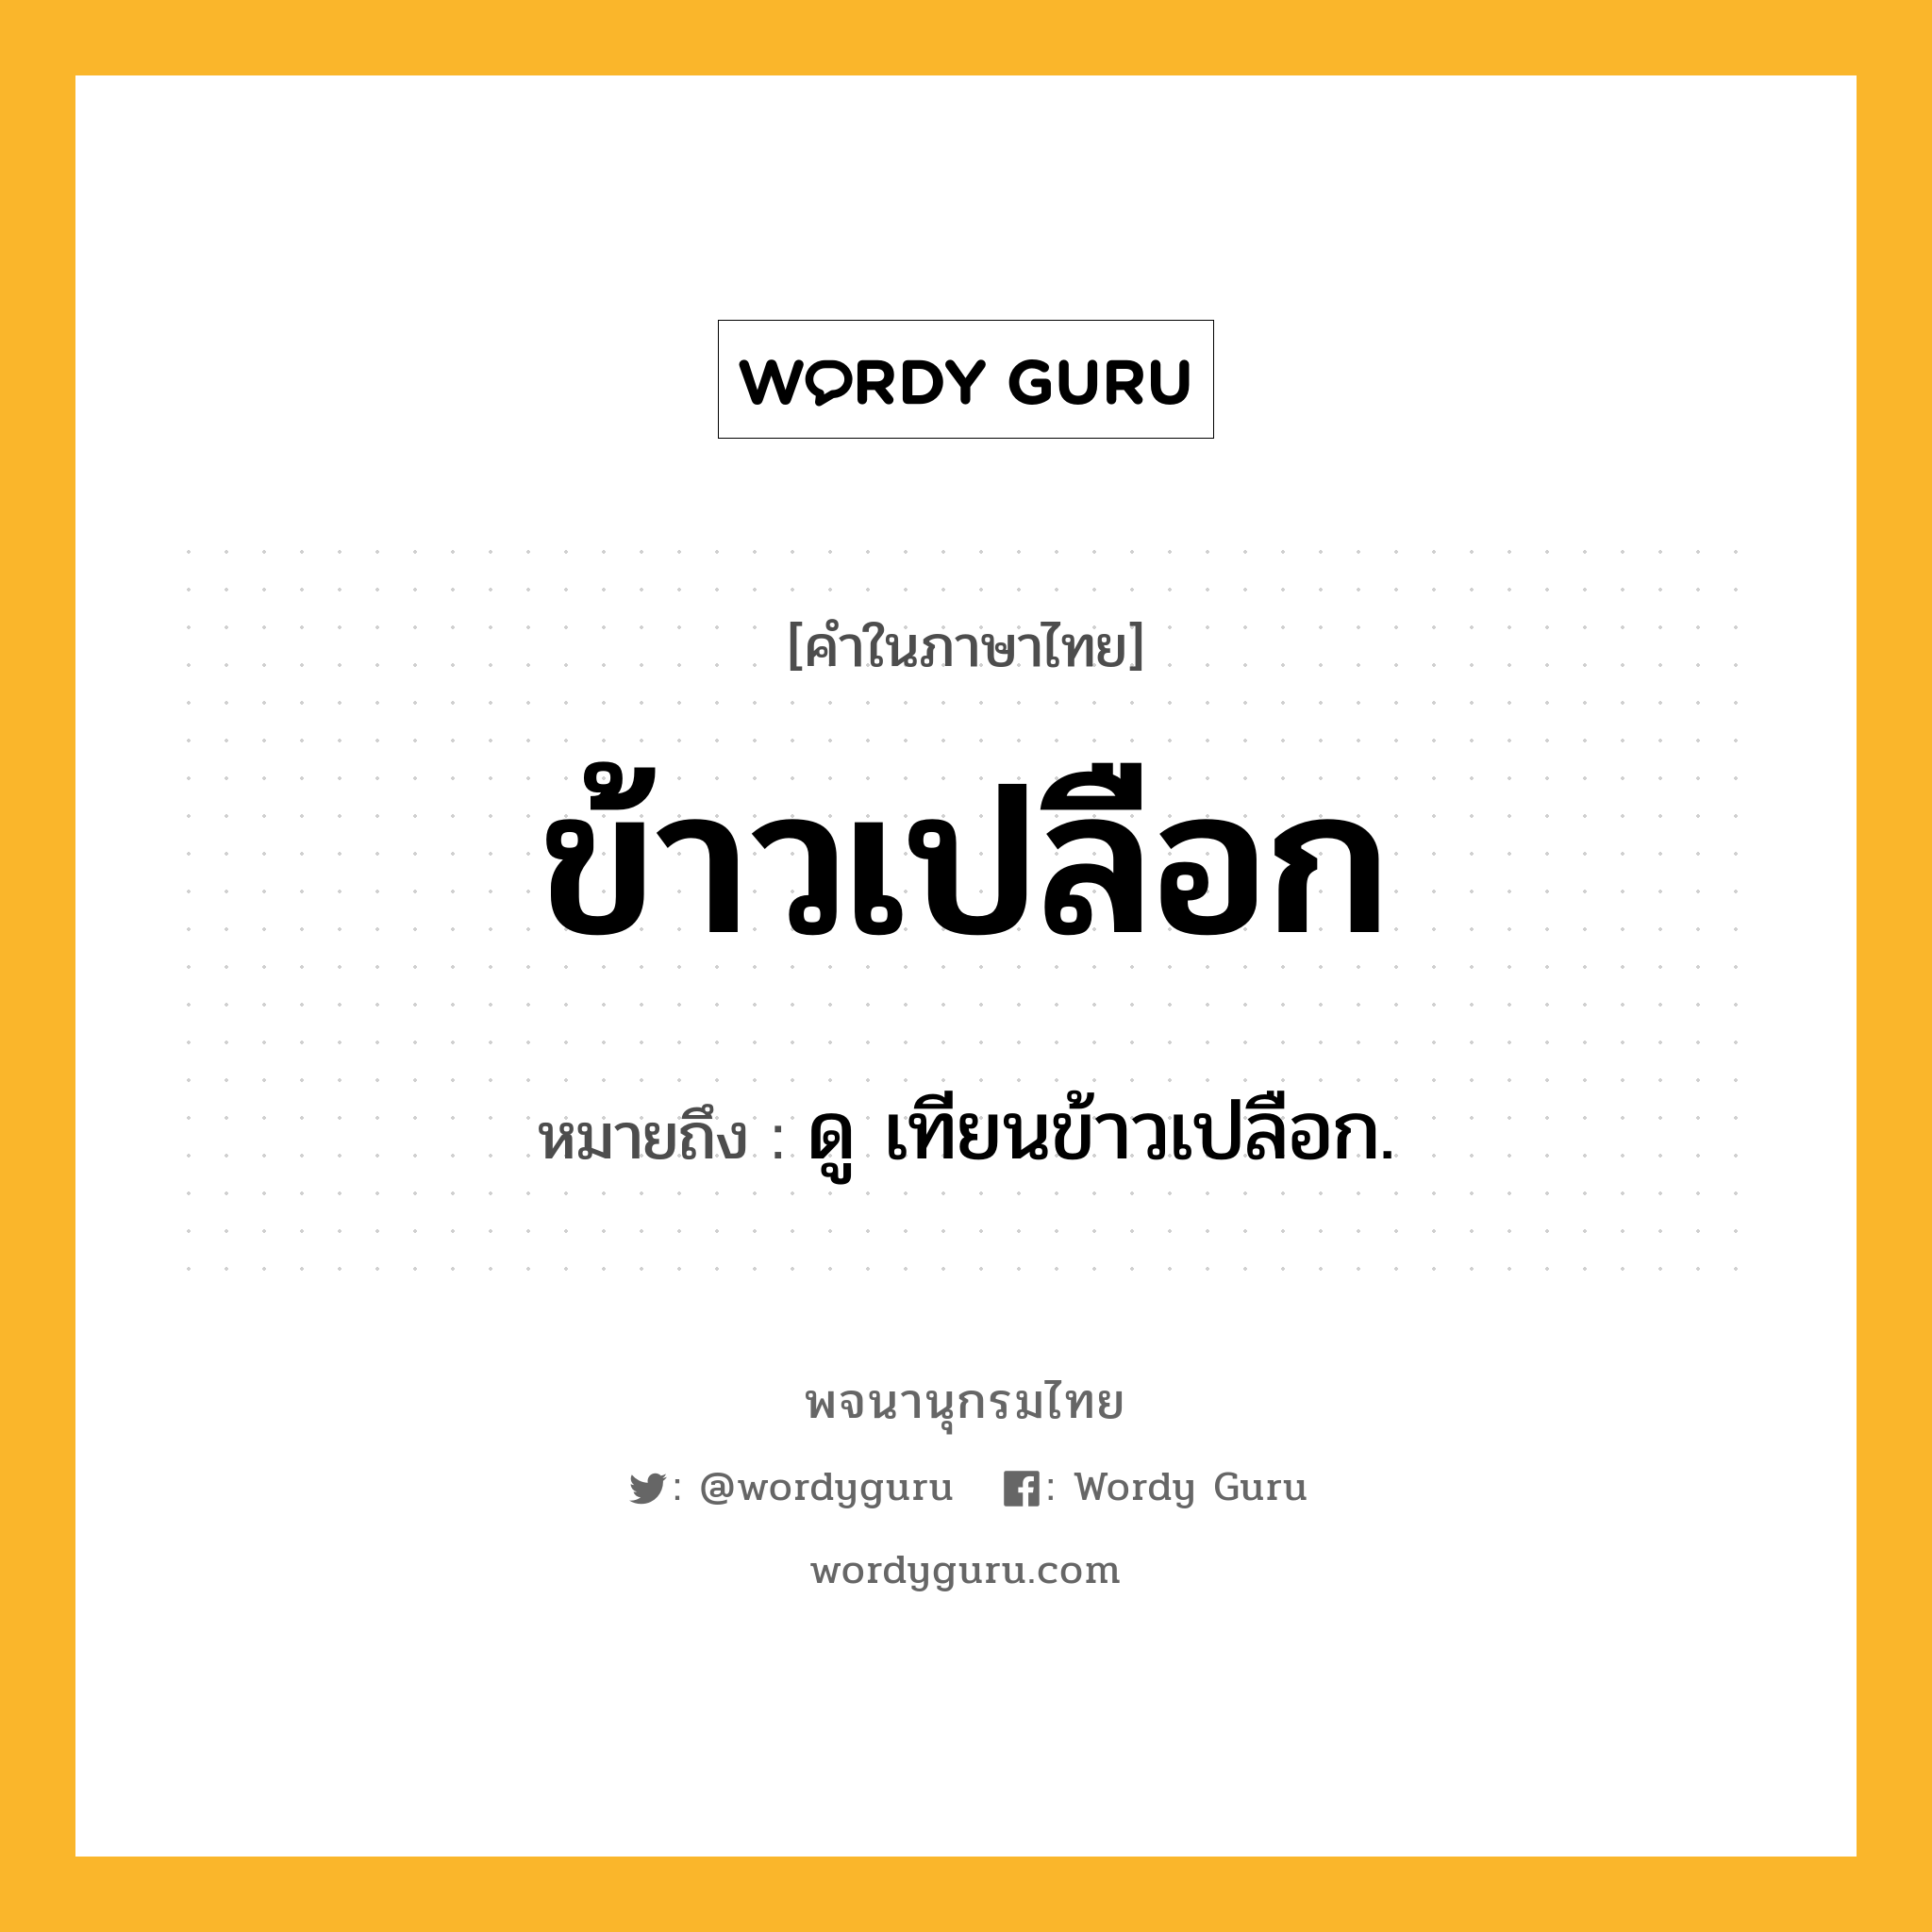 ข้าวเปลือก ความหมาย หมายถึงอะไร?, คำในภาษาไทย ข้าวเปลือก หมายถึง ดู เทียนข้าวเปลือก.